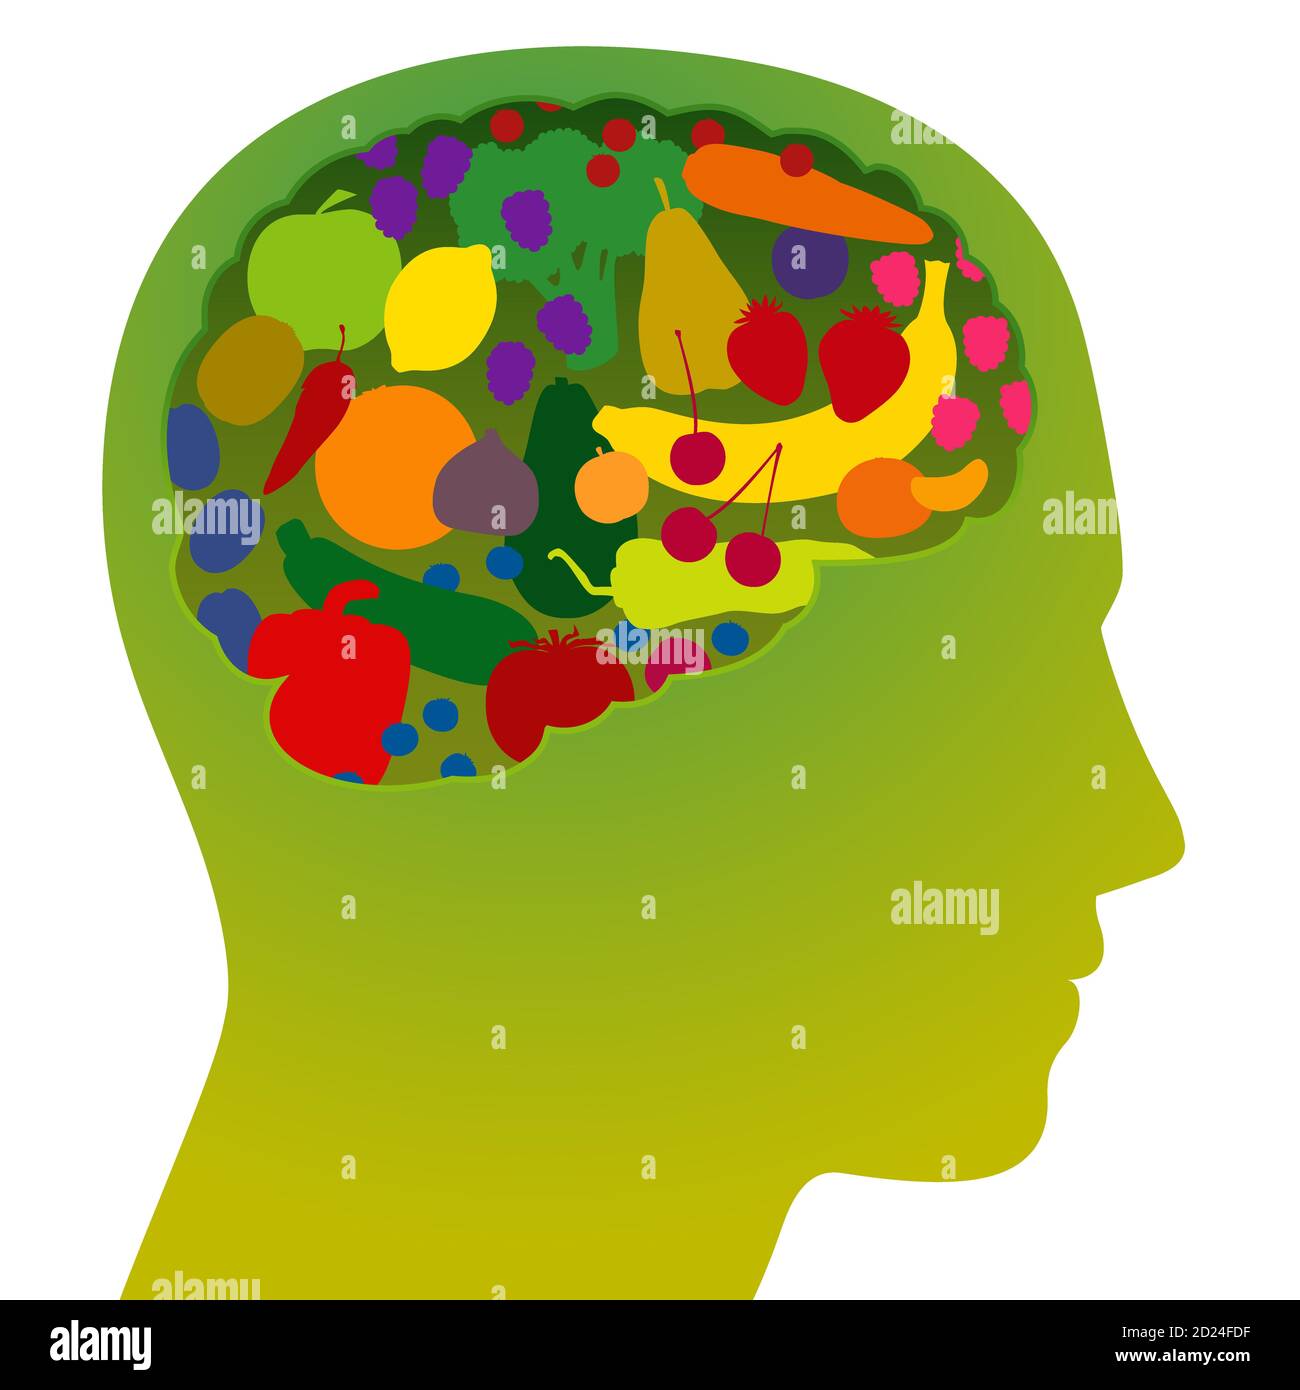 Cerebro con frutas y verduras de colores, como un símbolo de alimentos saludables, nutritivos y ricos en vitaminas para vegetarianos y vegetarianos conscientes de la salud. Foto de stock